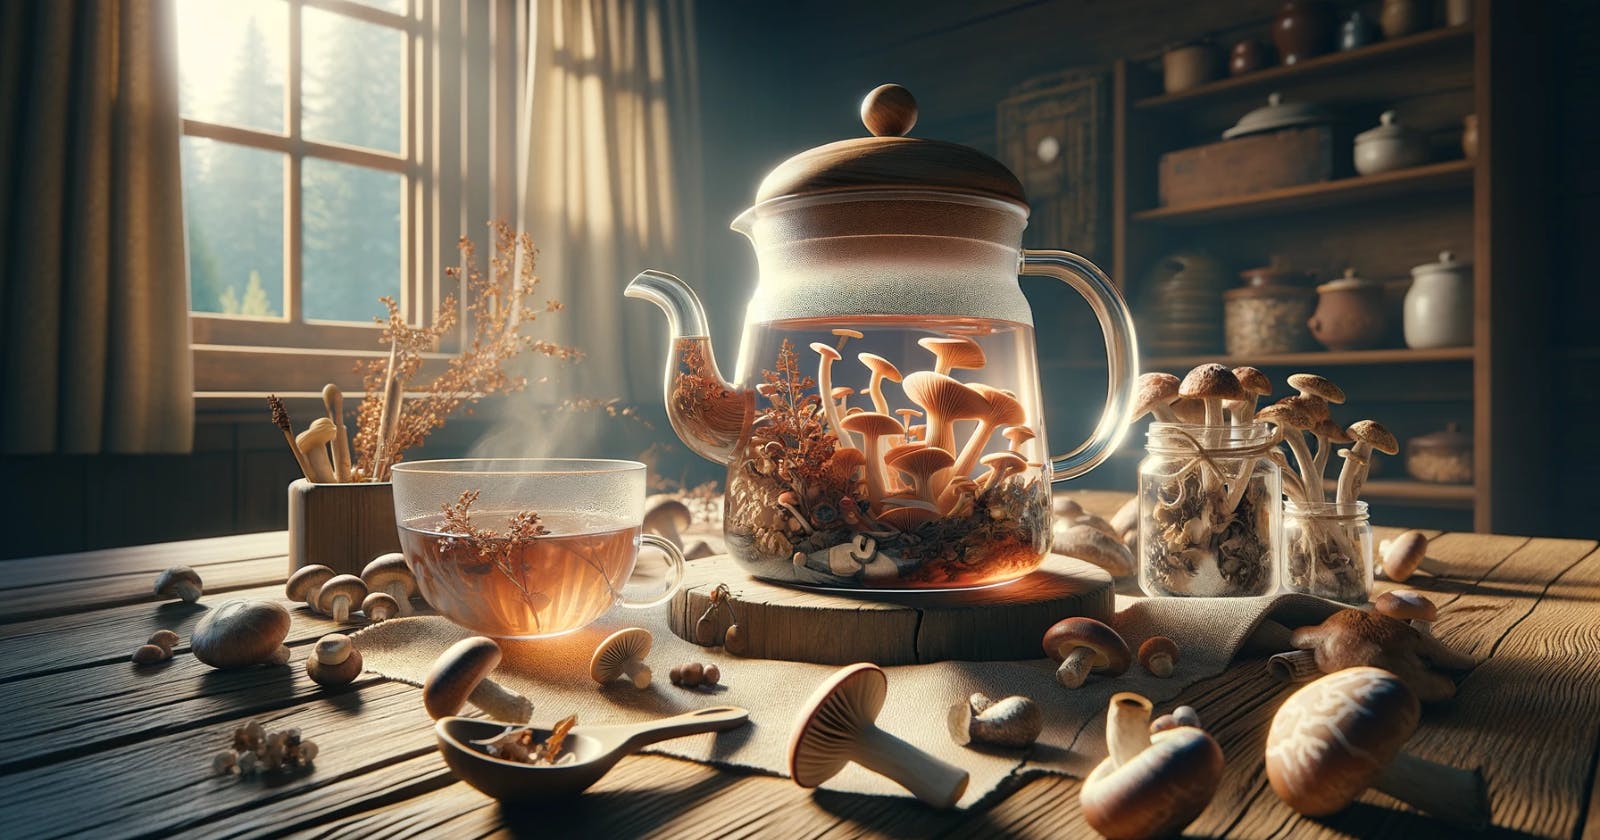 How to Make Mushroom tea